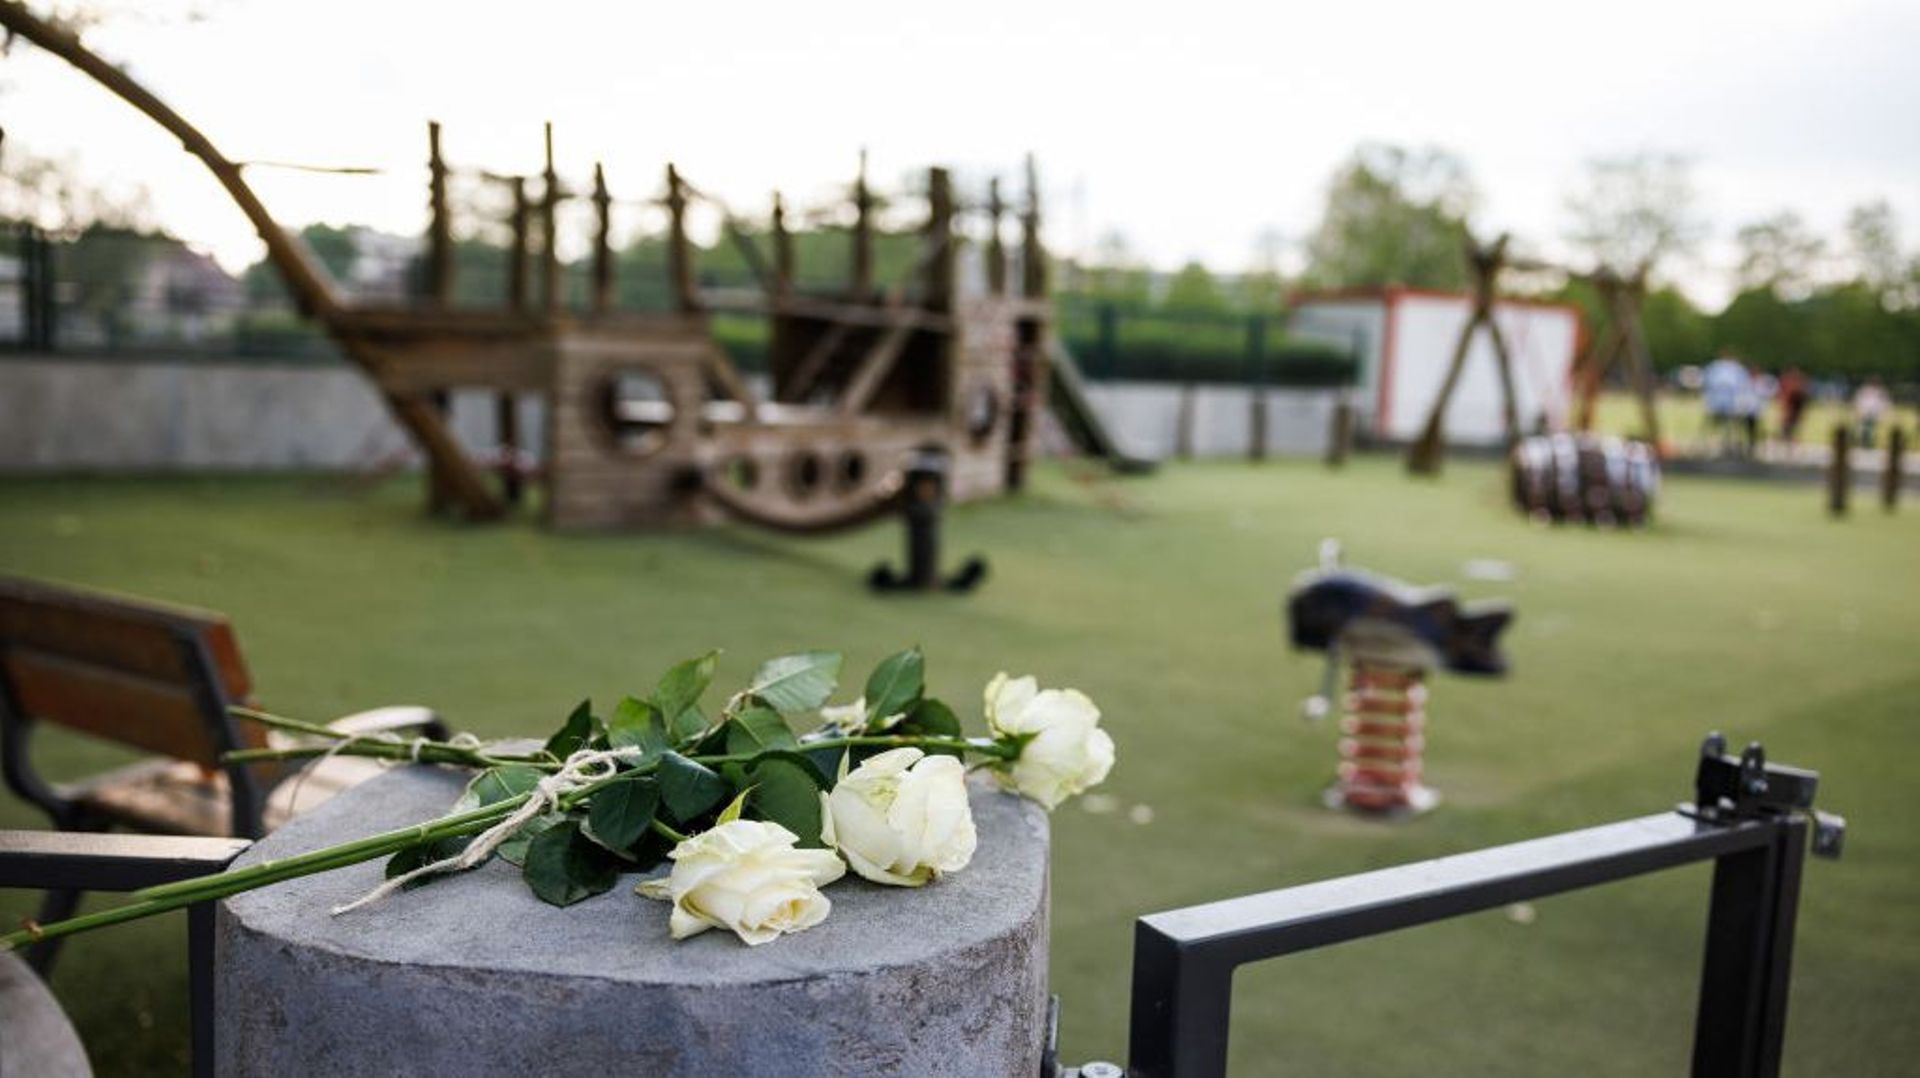 Des fleurs sont visibles dans le parc pour enfants du parc Paquier, où une attaque au couteau a eu lieu, le 8 juin 2023 à Annecy, France. Plusieurs personnes, dont quatre jeunes enfants, ont été blessées lors d’une attaque au couteau dans une aire de jeux